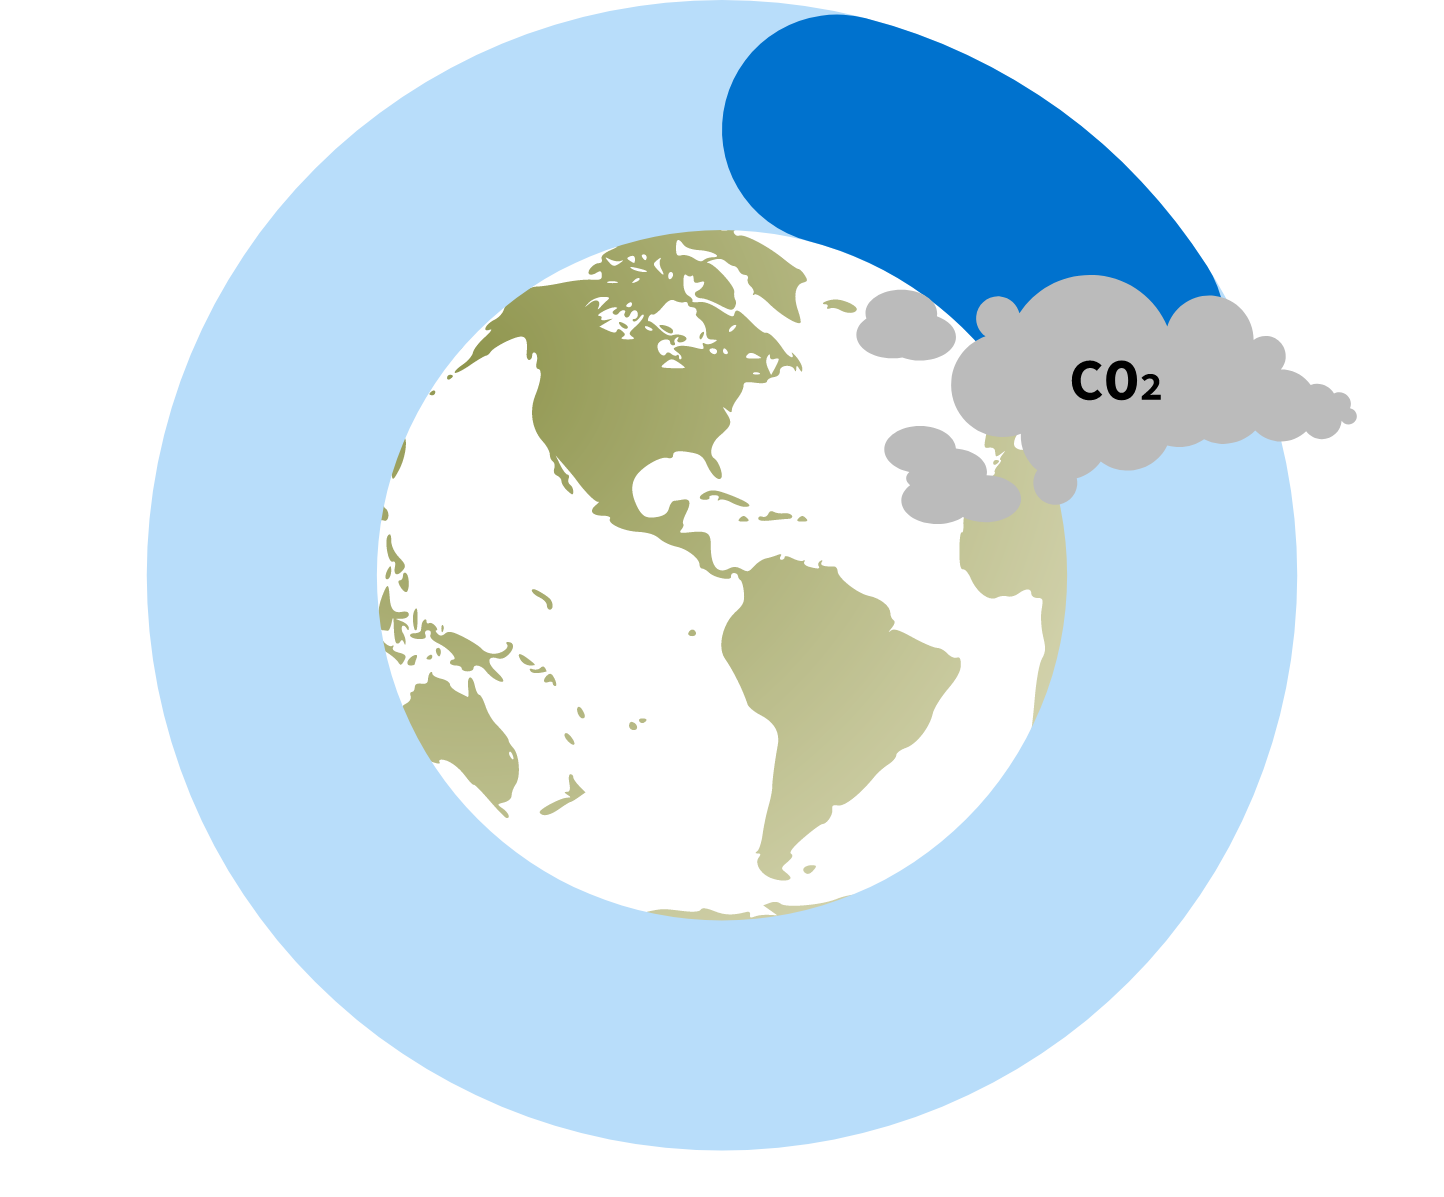 Jordan har 1,92 tonn CO2-utslipp per innbygger.